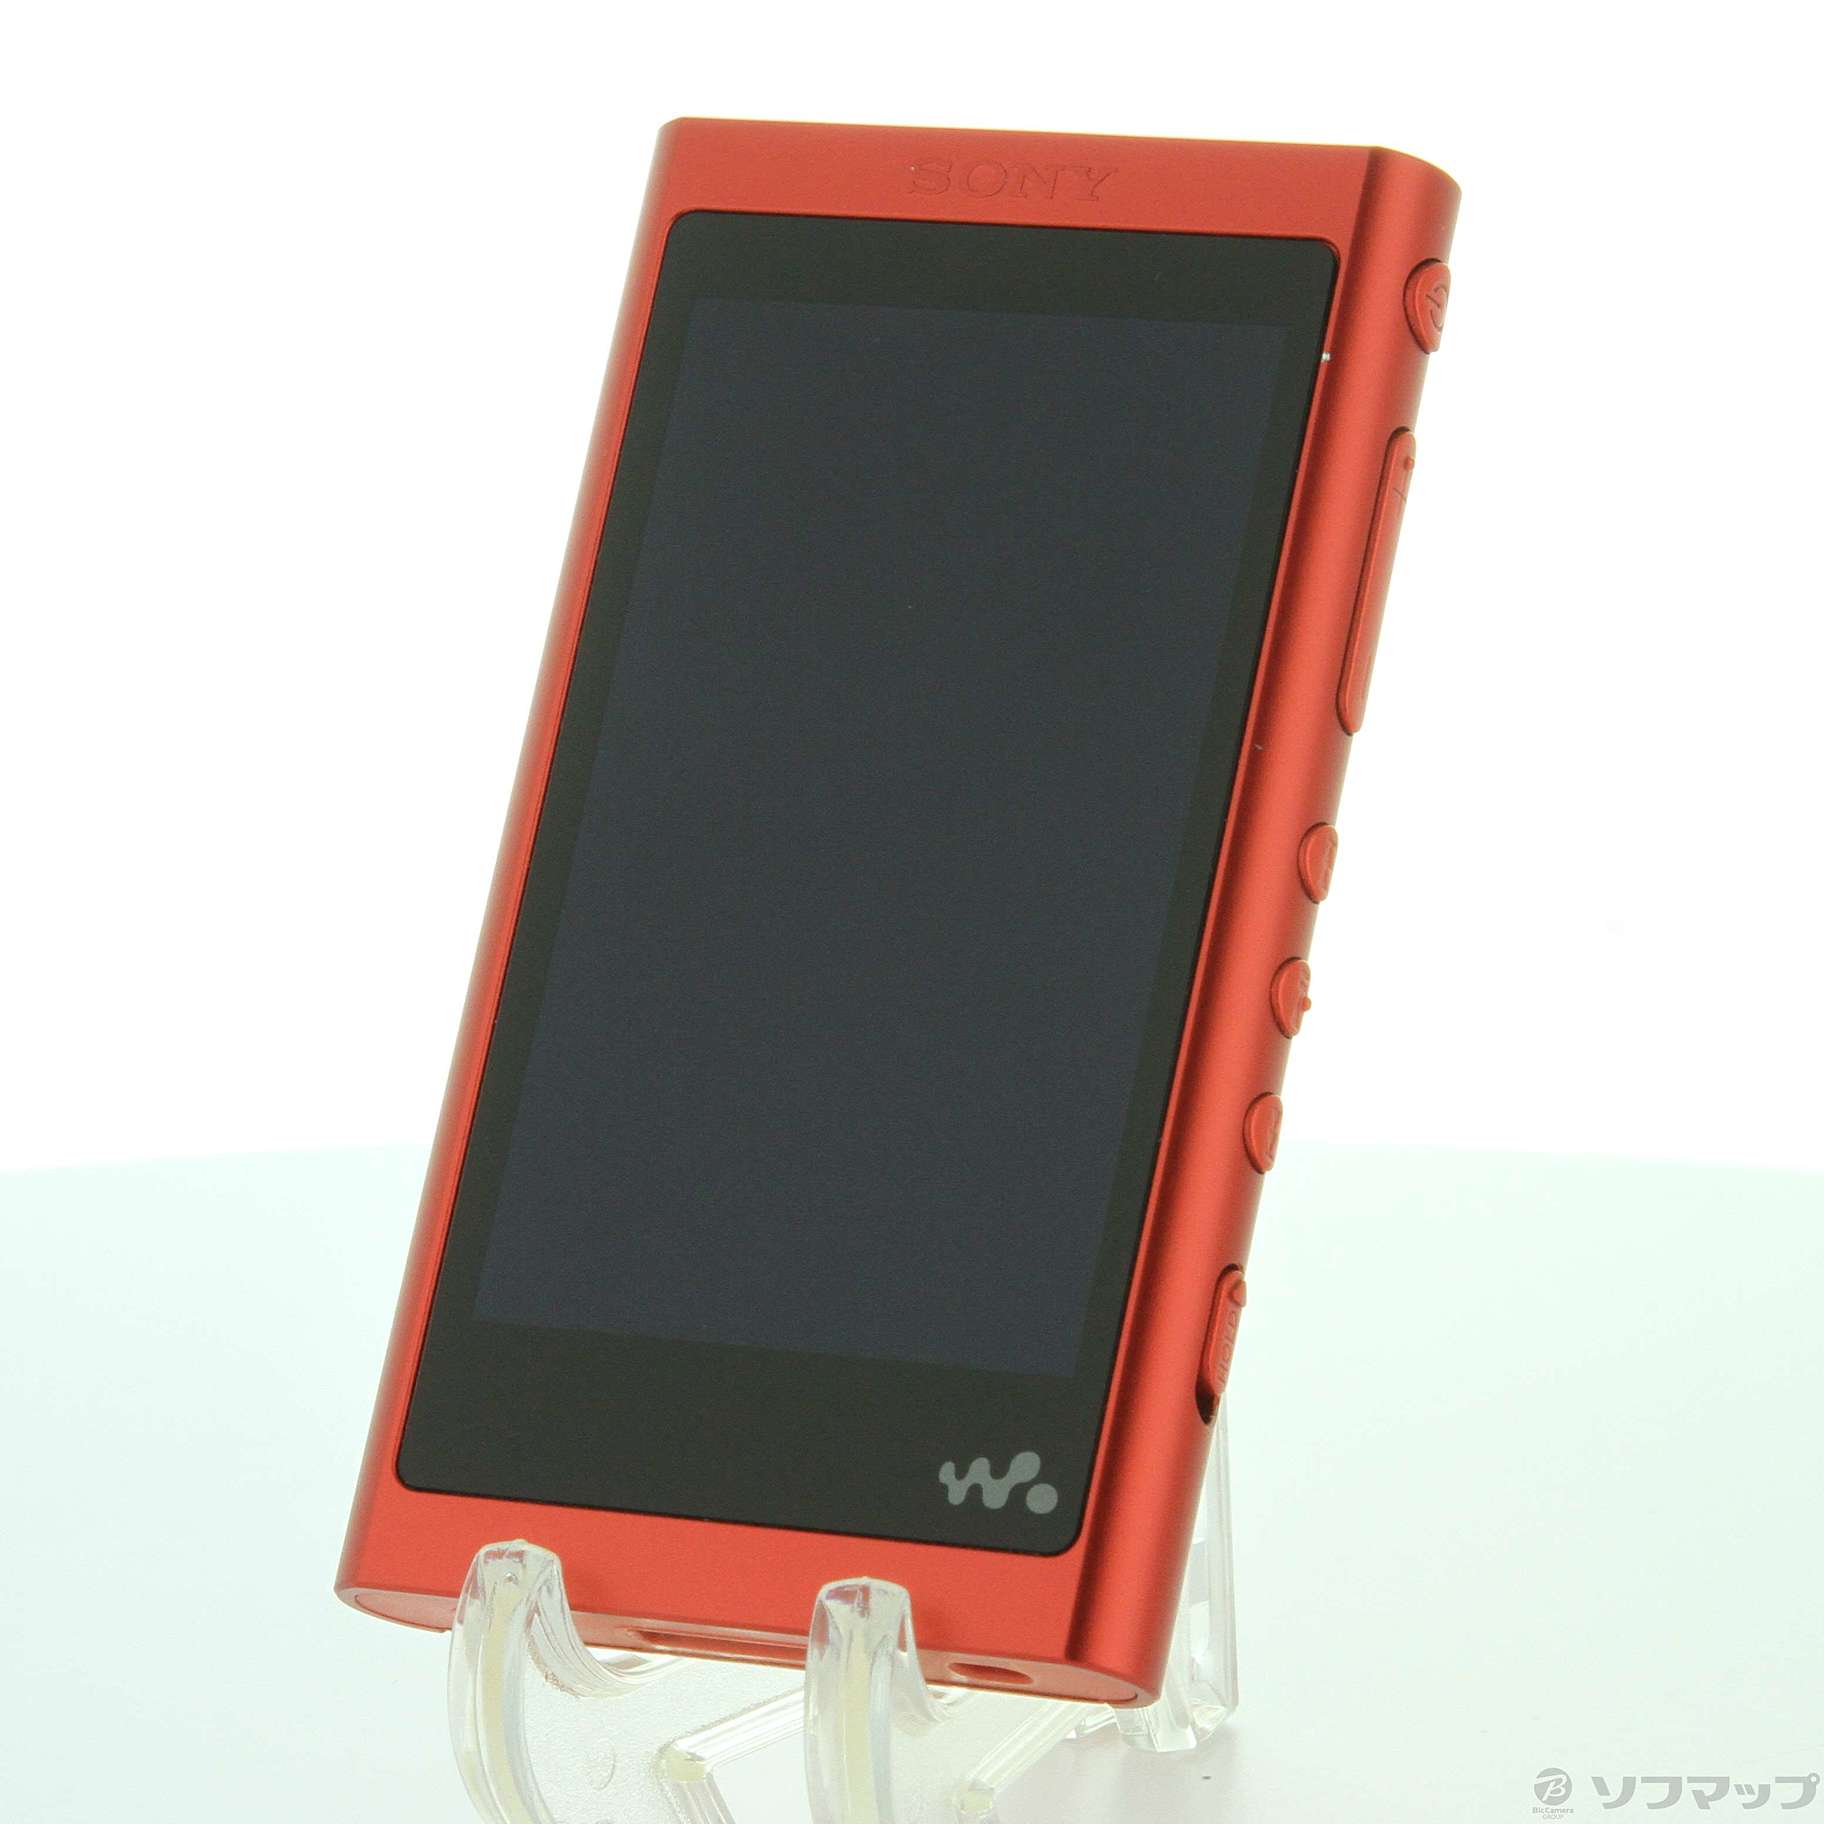 セール格安】 SONY(VAIO) NW-A55HN/B ウォークマン Aシリーズ 16GB